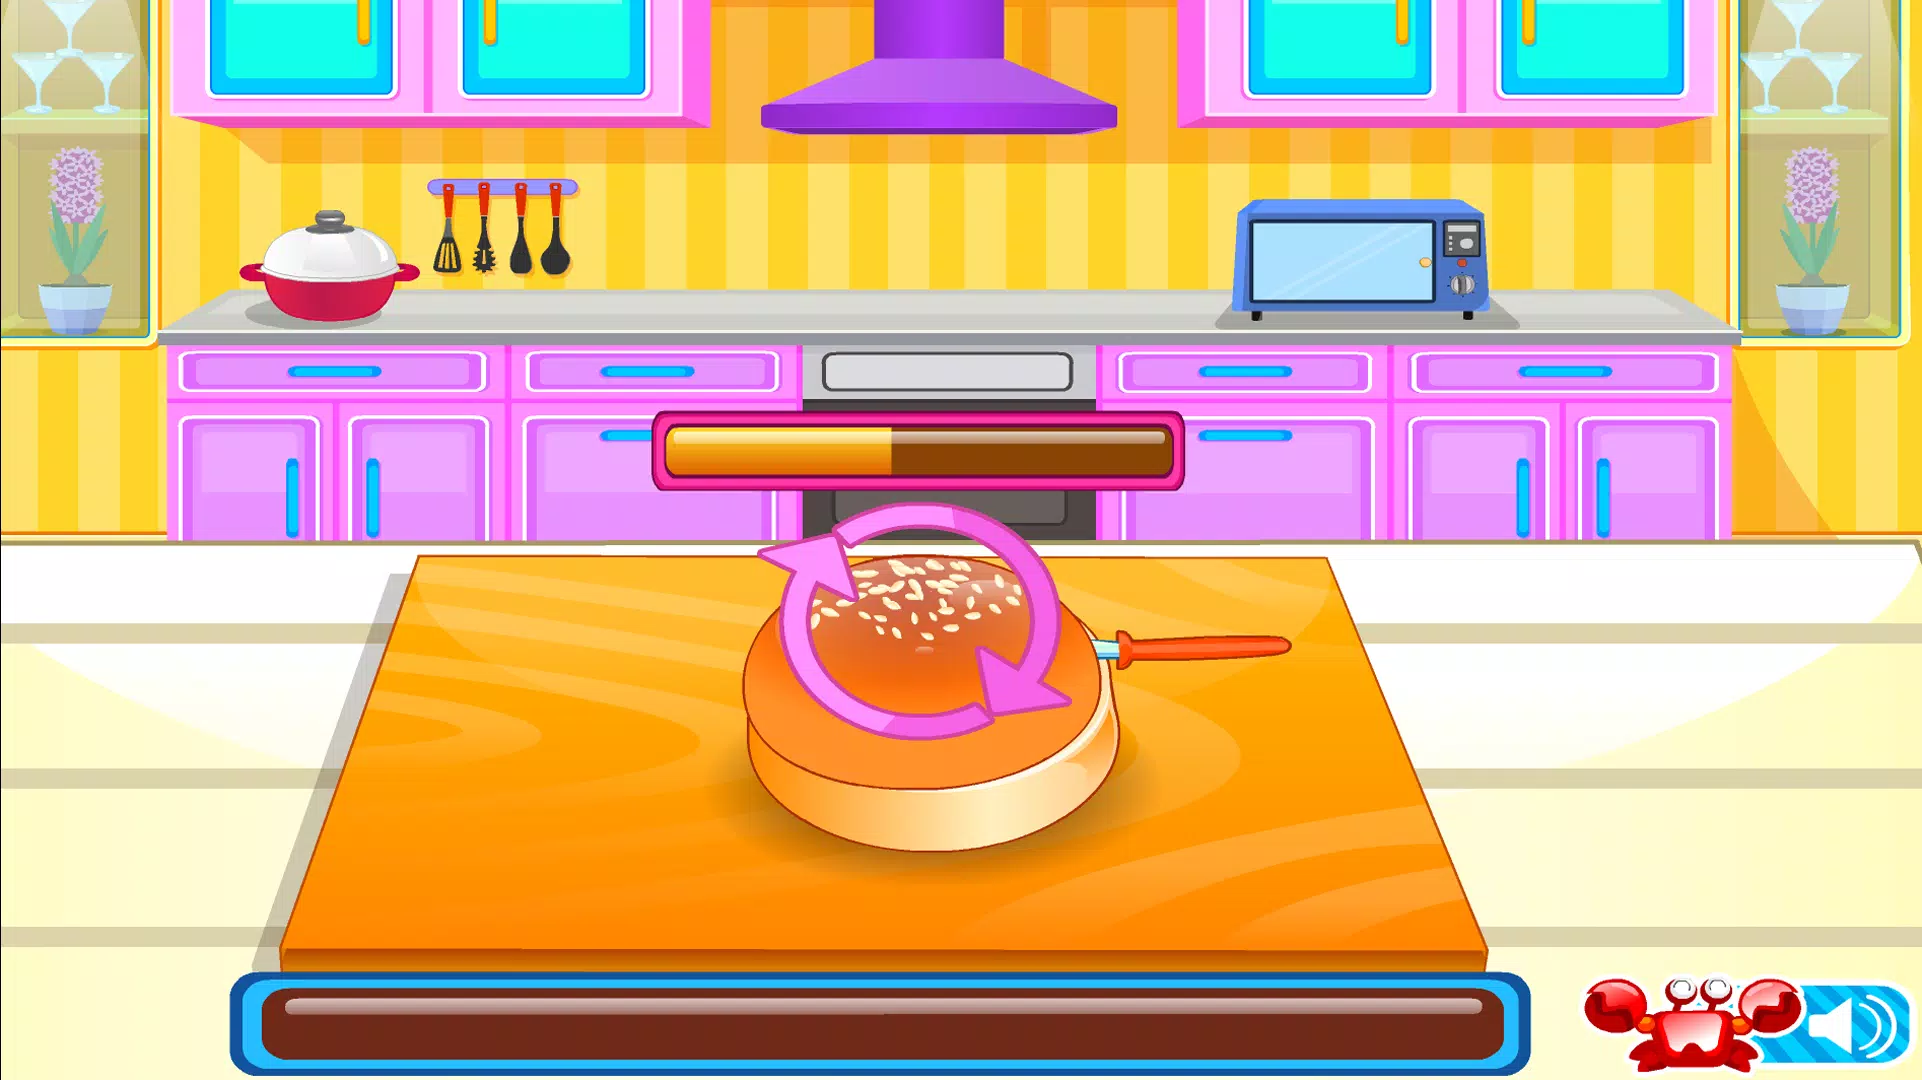 Download do APK de Jogos de Cozinha para Android